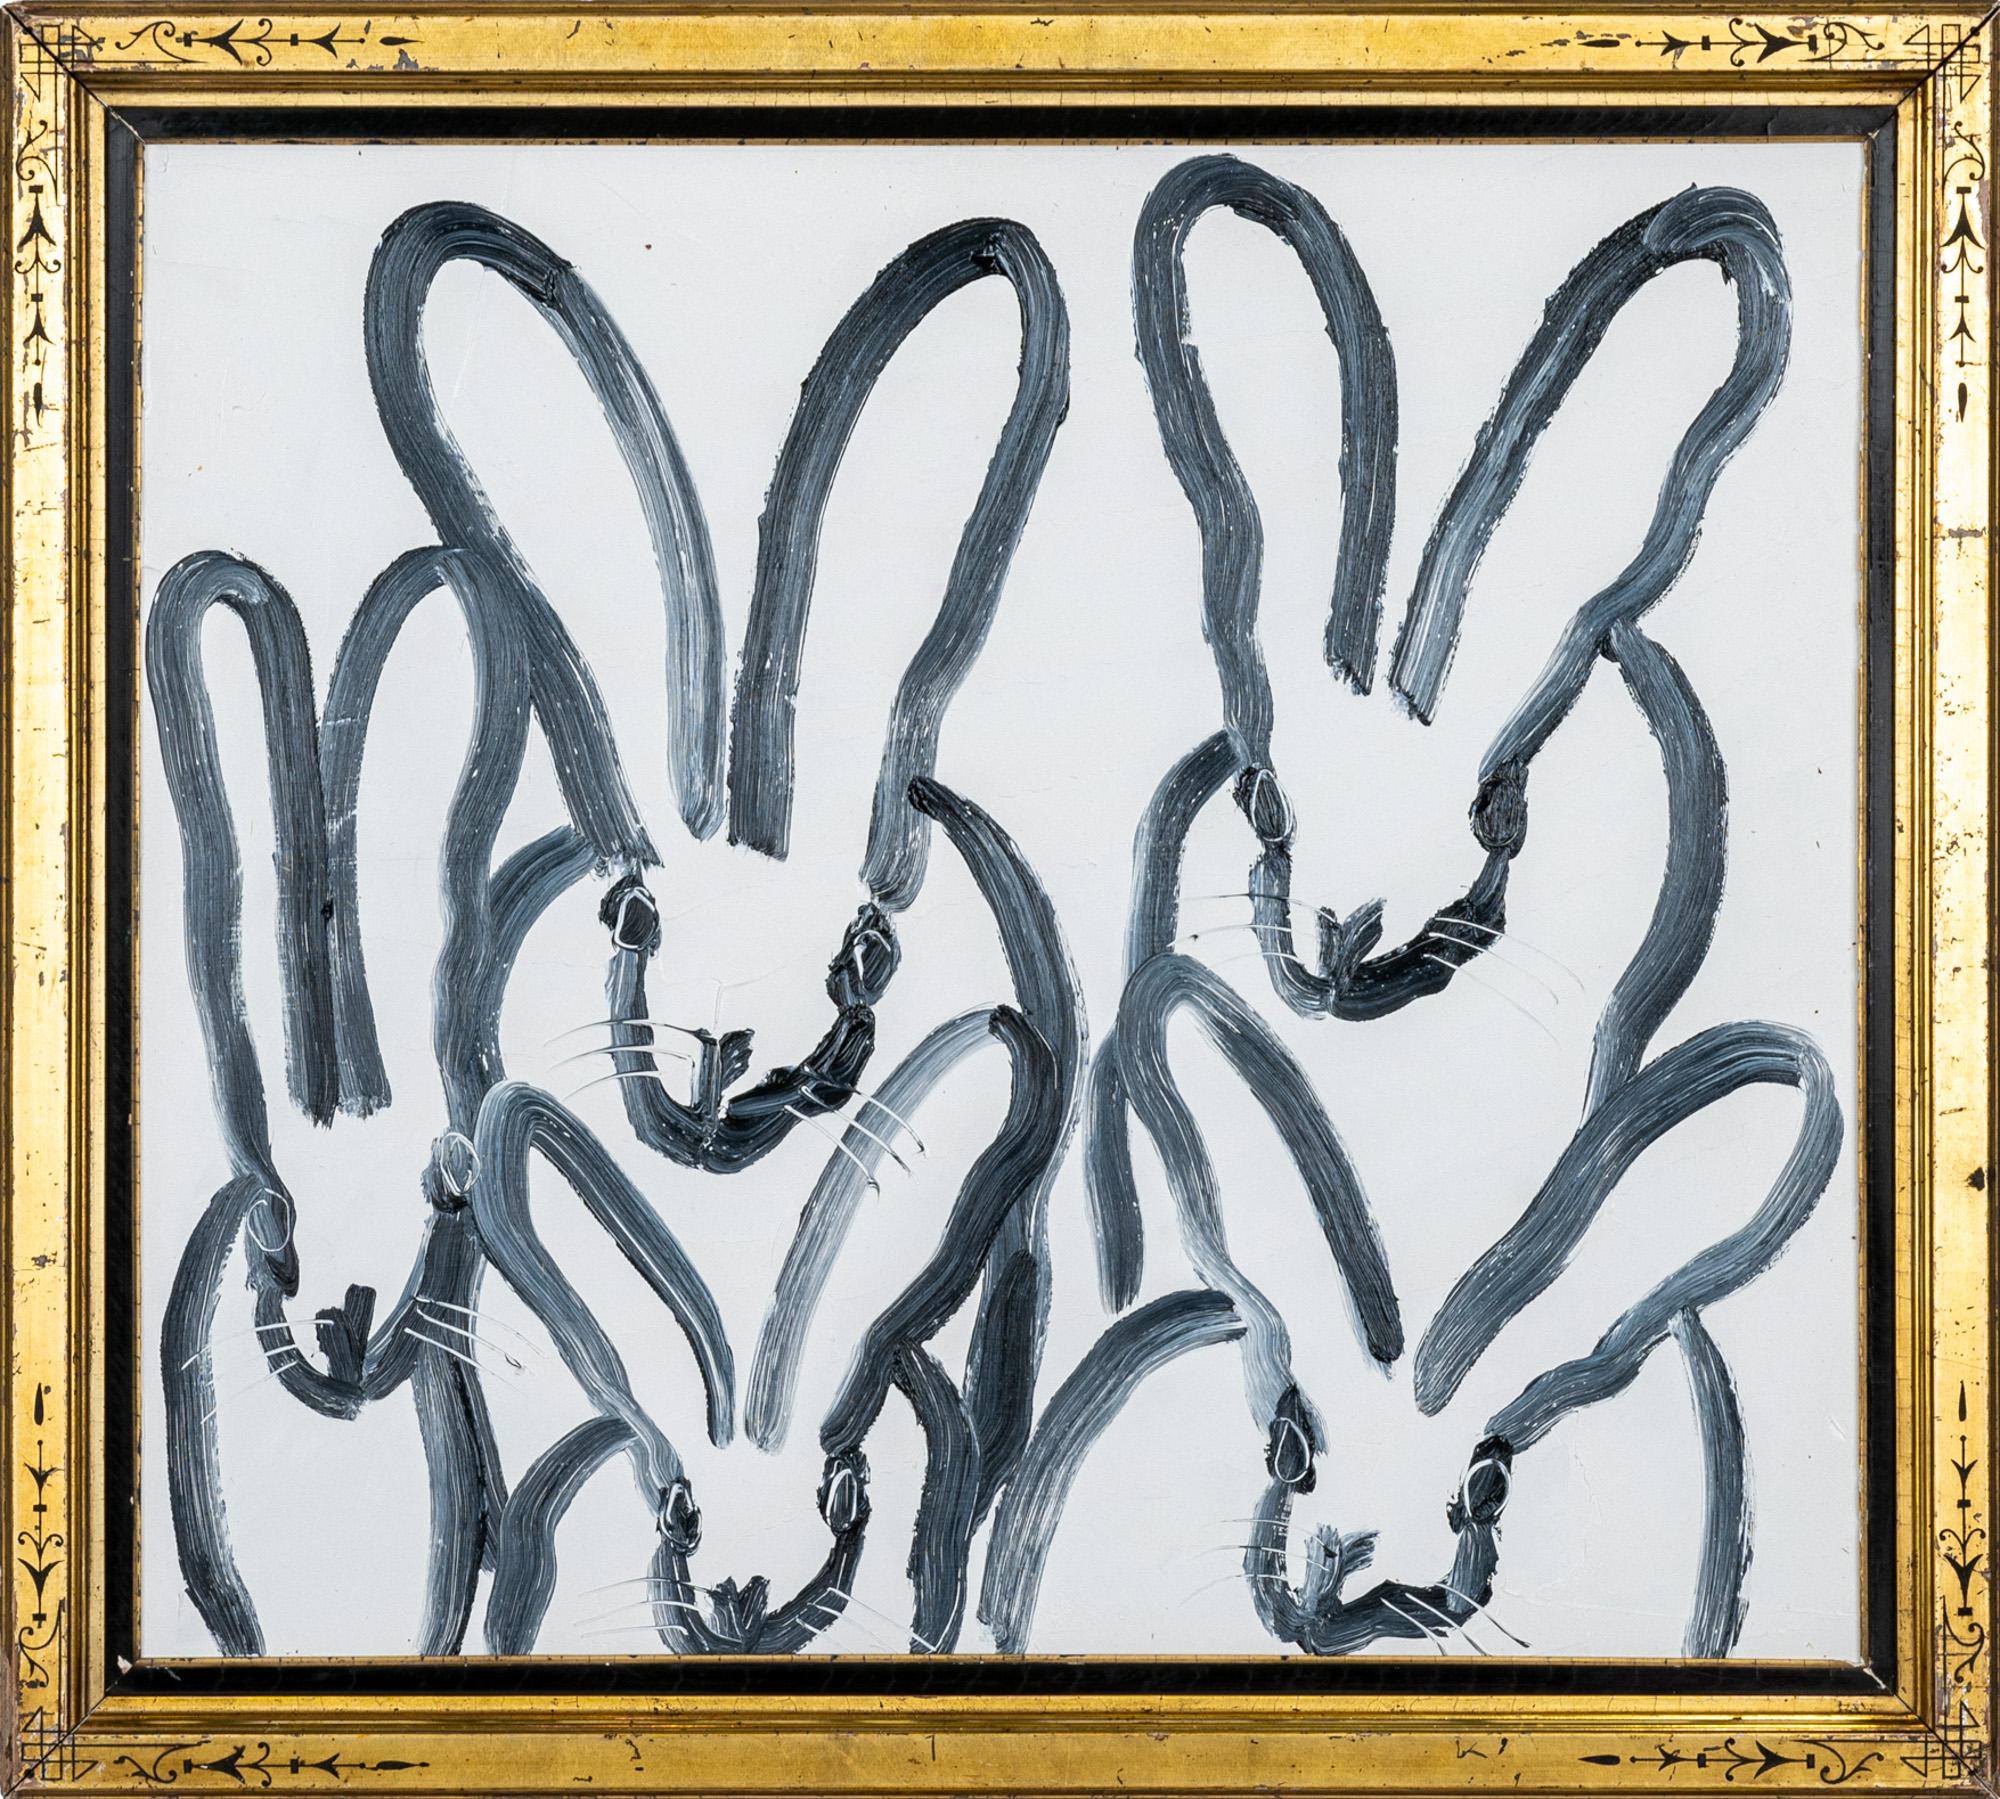 "Hutch 5" ist ein gerahmtes Ölgemälde auf Holz von Hunt Slonem, das 5 Kaninchen in malerischen Konturlinien vor einem einfachen weißen Hintergrund zeigt. 

Dieses Werk ist in einem antiken Rahmen gefasst, der vom Künstler für dieses Gemälde